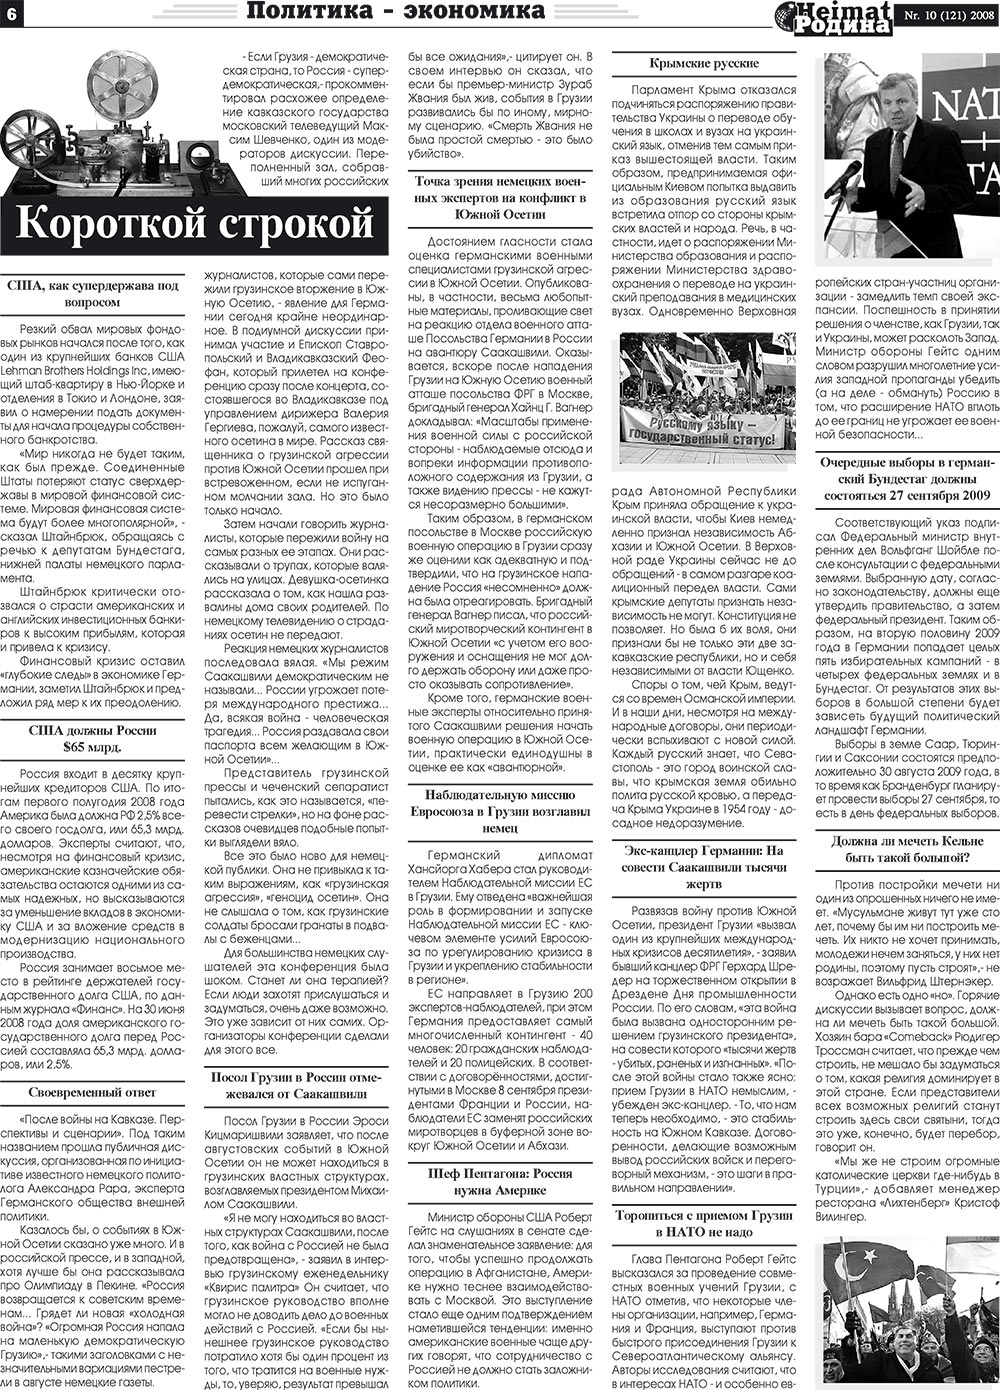 Heimat-Родина (газета). 2008 год, номер 10, стр. 6